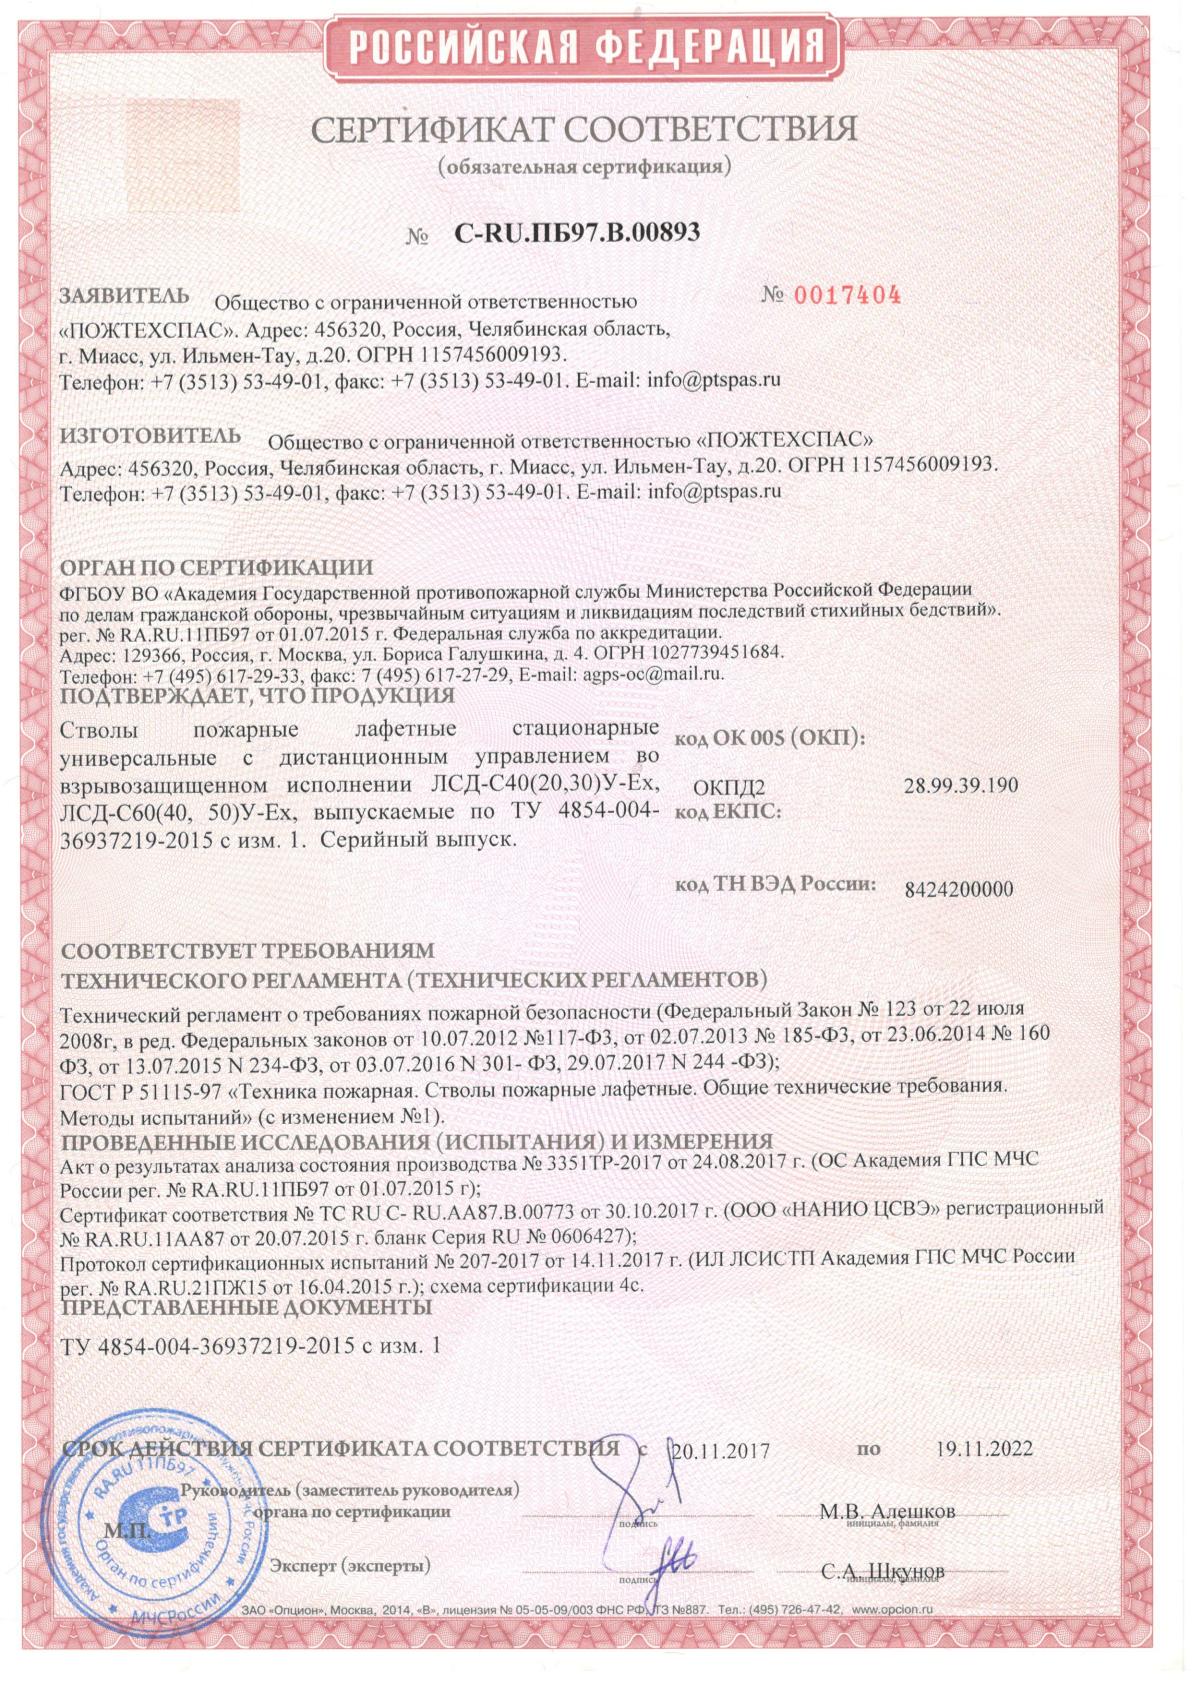 Сертификат соответствия стволы пожарные лафетные стационарные универсальные с ДУ во взрывозащищенном исполнении ЛСД-С40(20,30) У-ЕХ